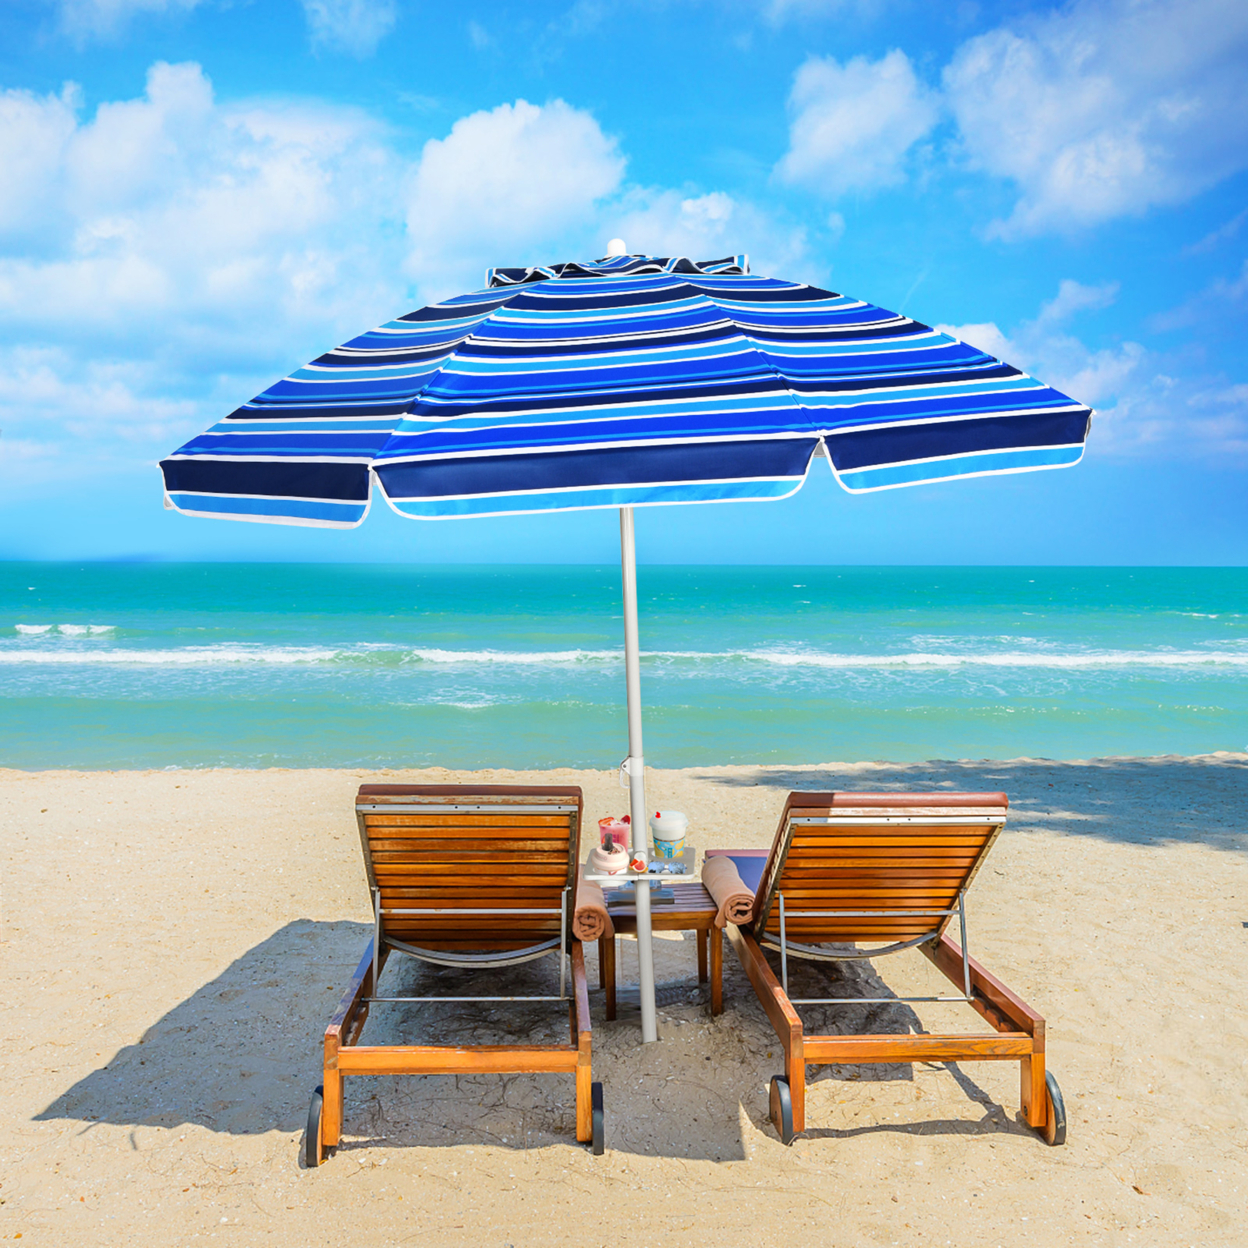 7.2ft Beach Umbrella Outdoor Patio Garden W/ Carrying Bag Sand Anchor - Navy Blue